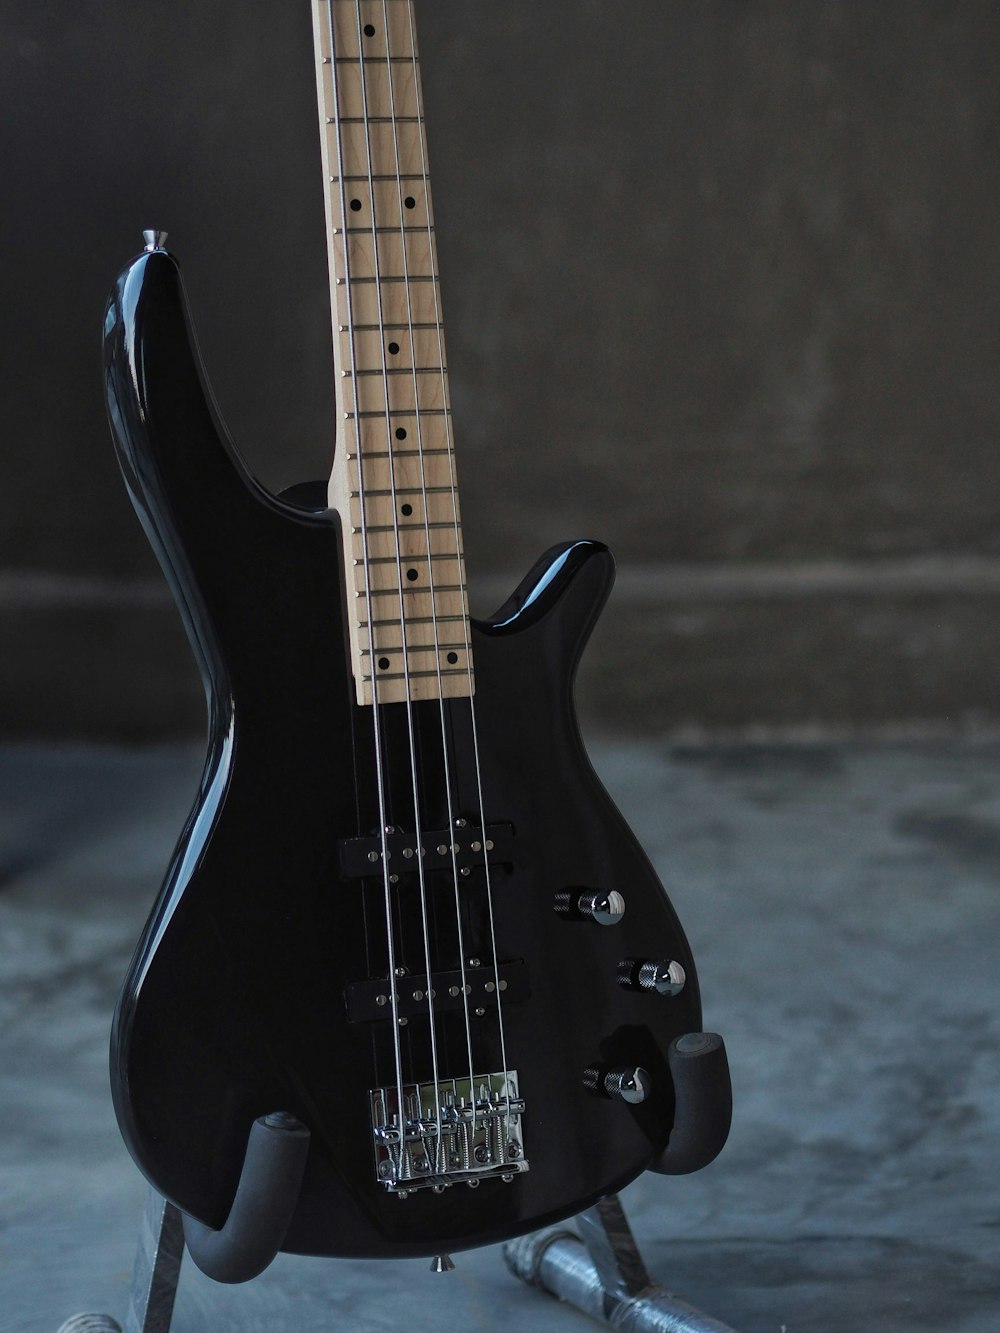 guitare électrique noire sur textile noir et blanc